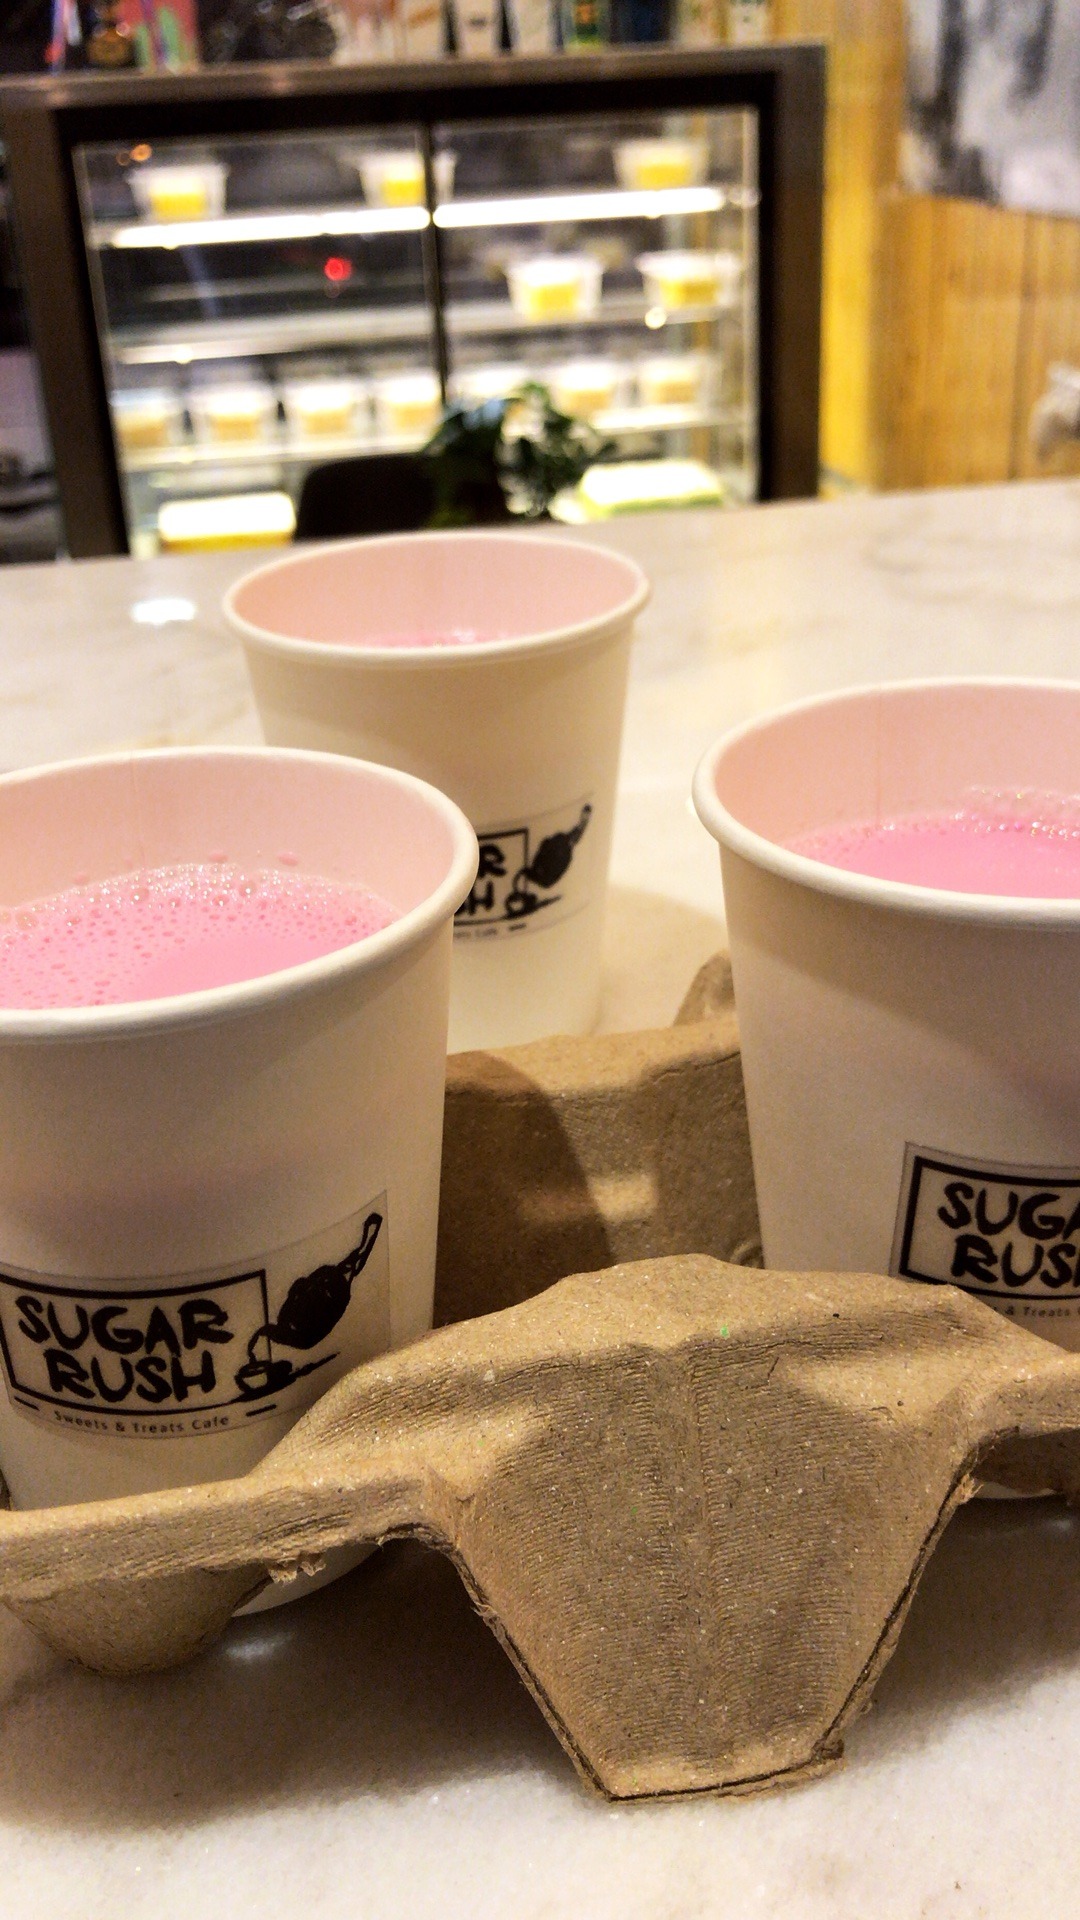 Sugar Rush Cafe - Bahrain